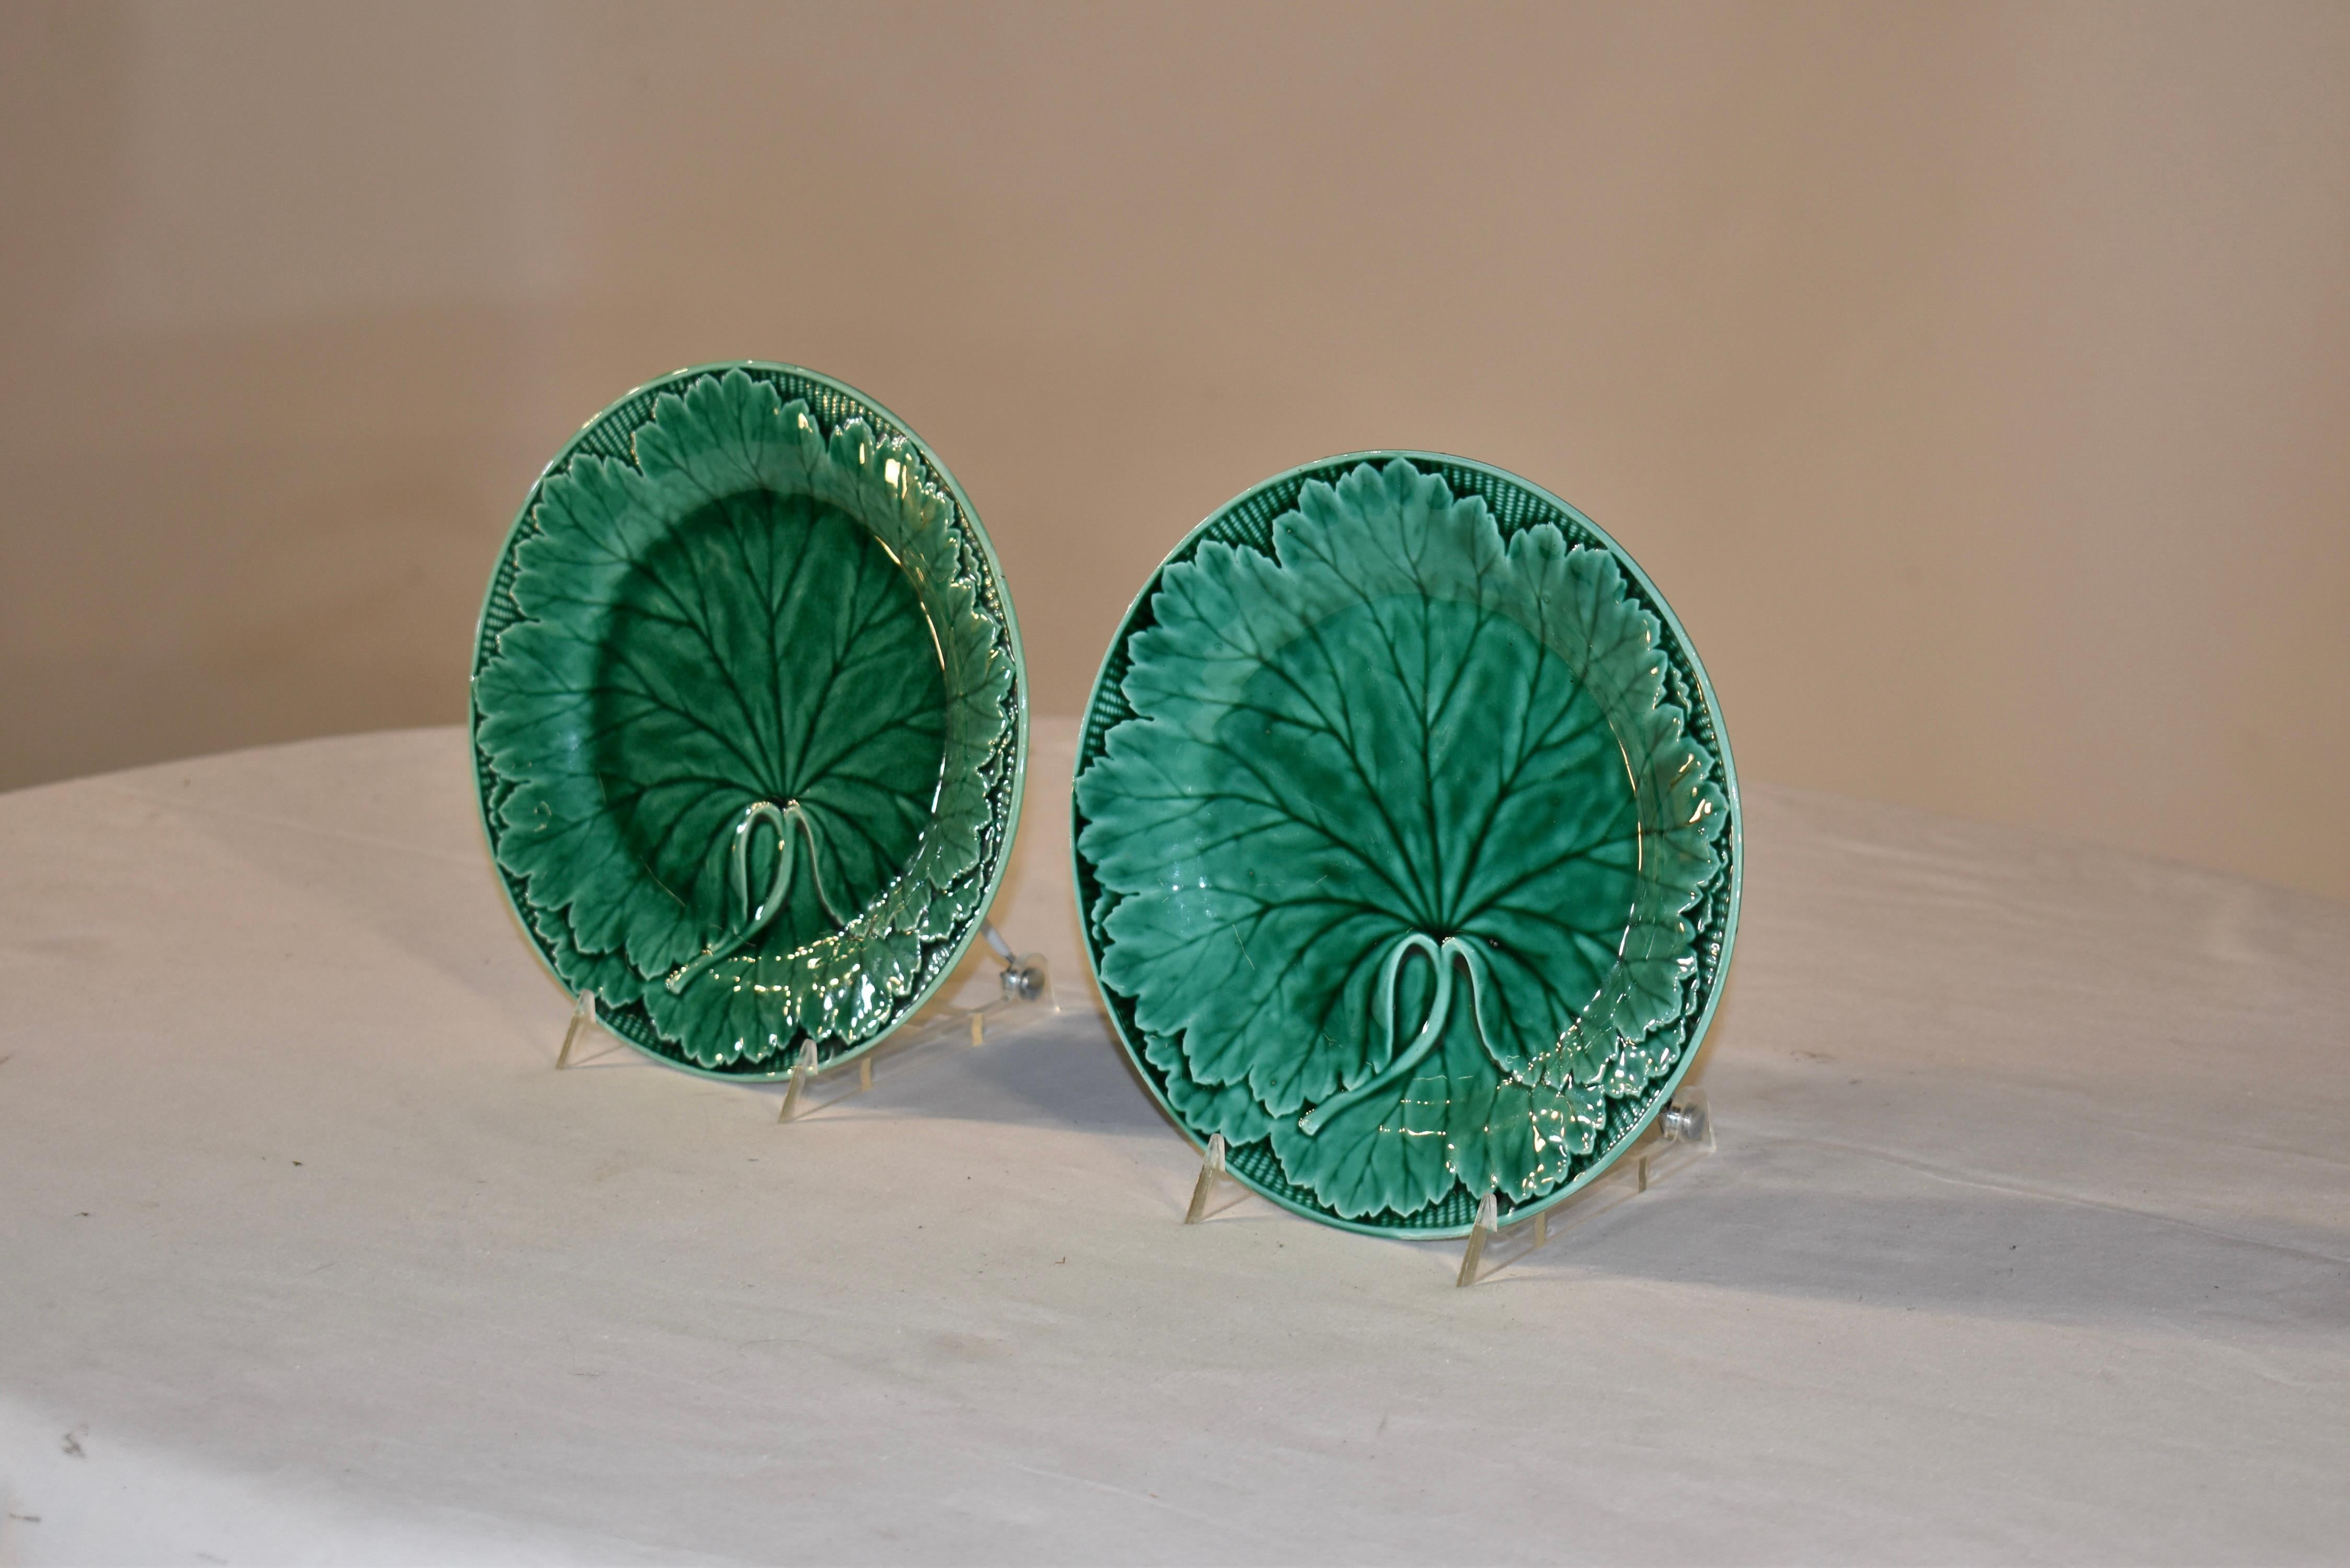 Paar Wedgwood Majolikateller aus dem 19. Jahrhundert in satten Grüntönen. Die Formen sind gestochen scharf und weisen viele Details in den Blättern und dem umgebenden Korbflechtmuster auf. Die Stücke tragen auf den Rückseiten die eingeprägte Marke